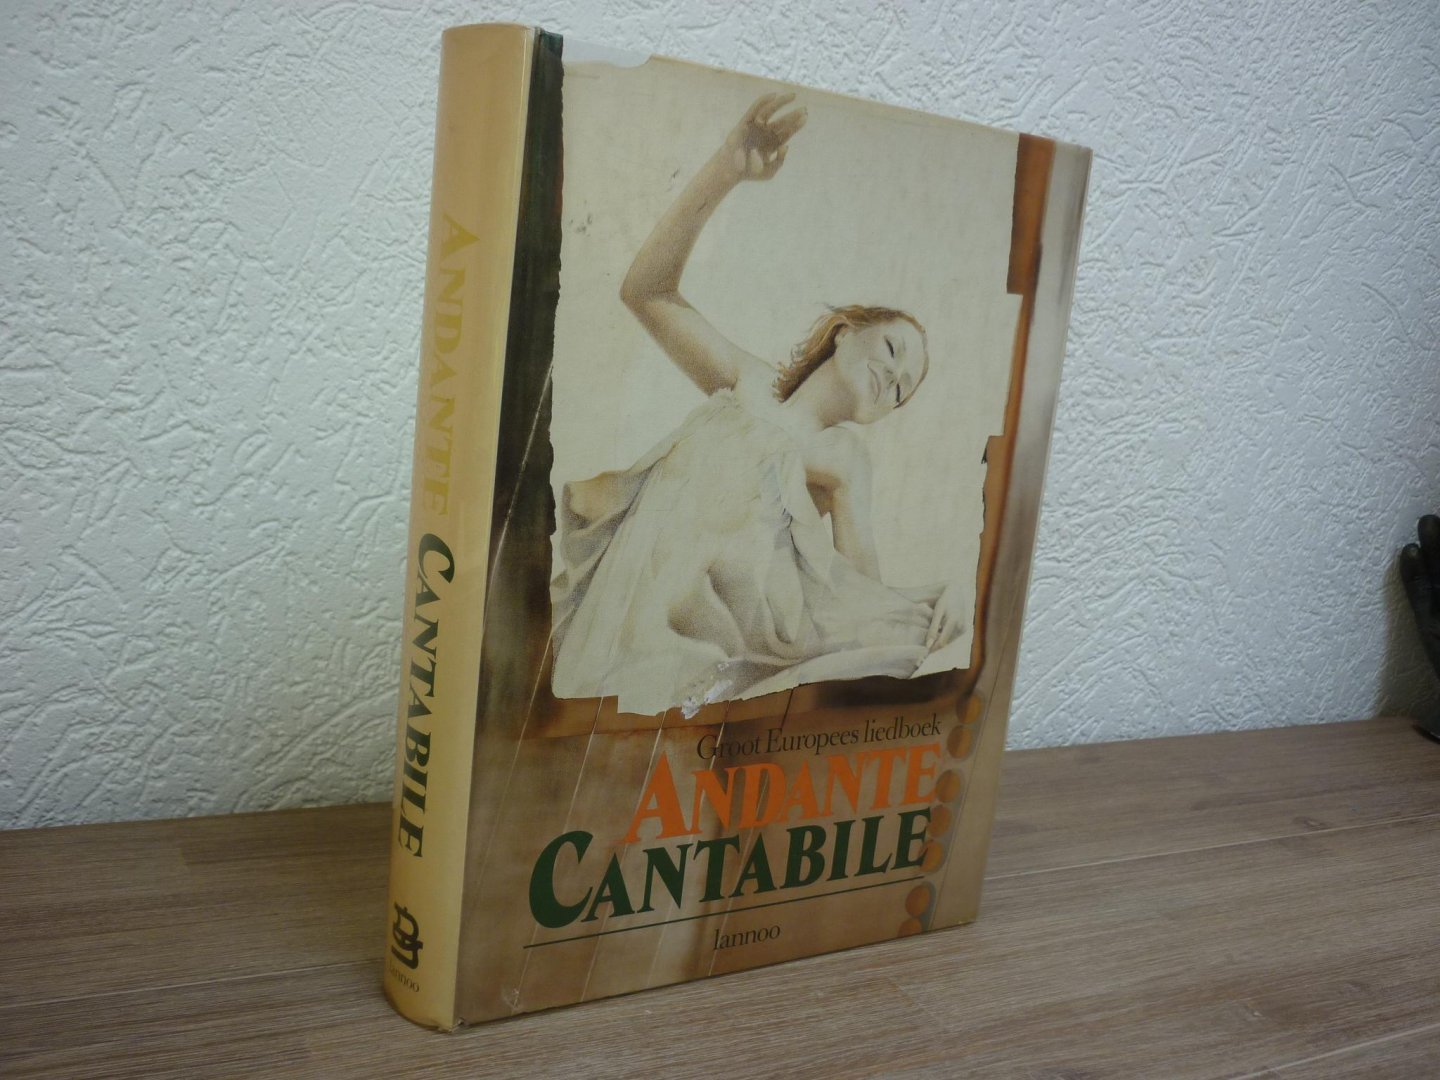 Dessel; Lode van / Johan Fleerackers - Andante Cantabile; Groot Europees liedboek